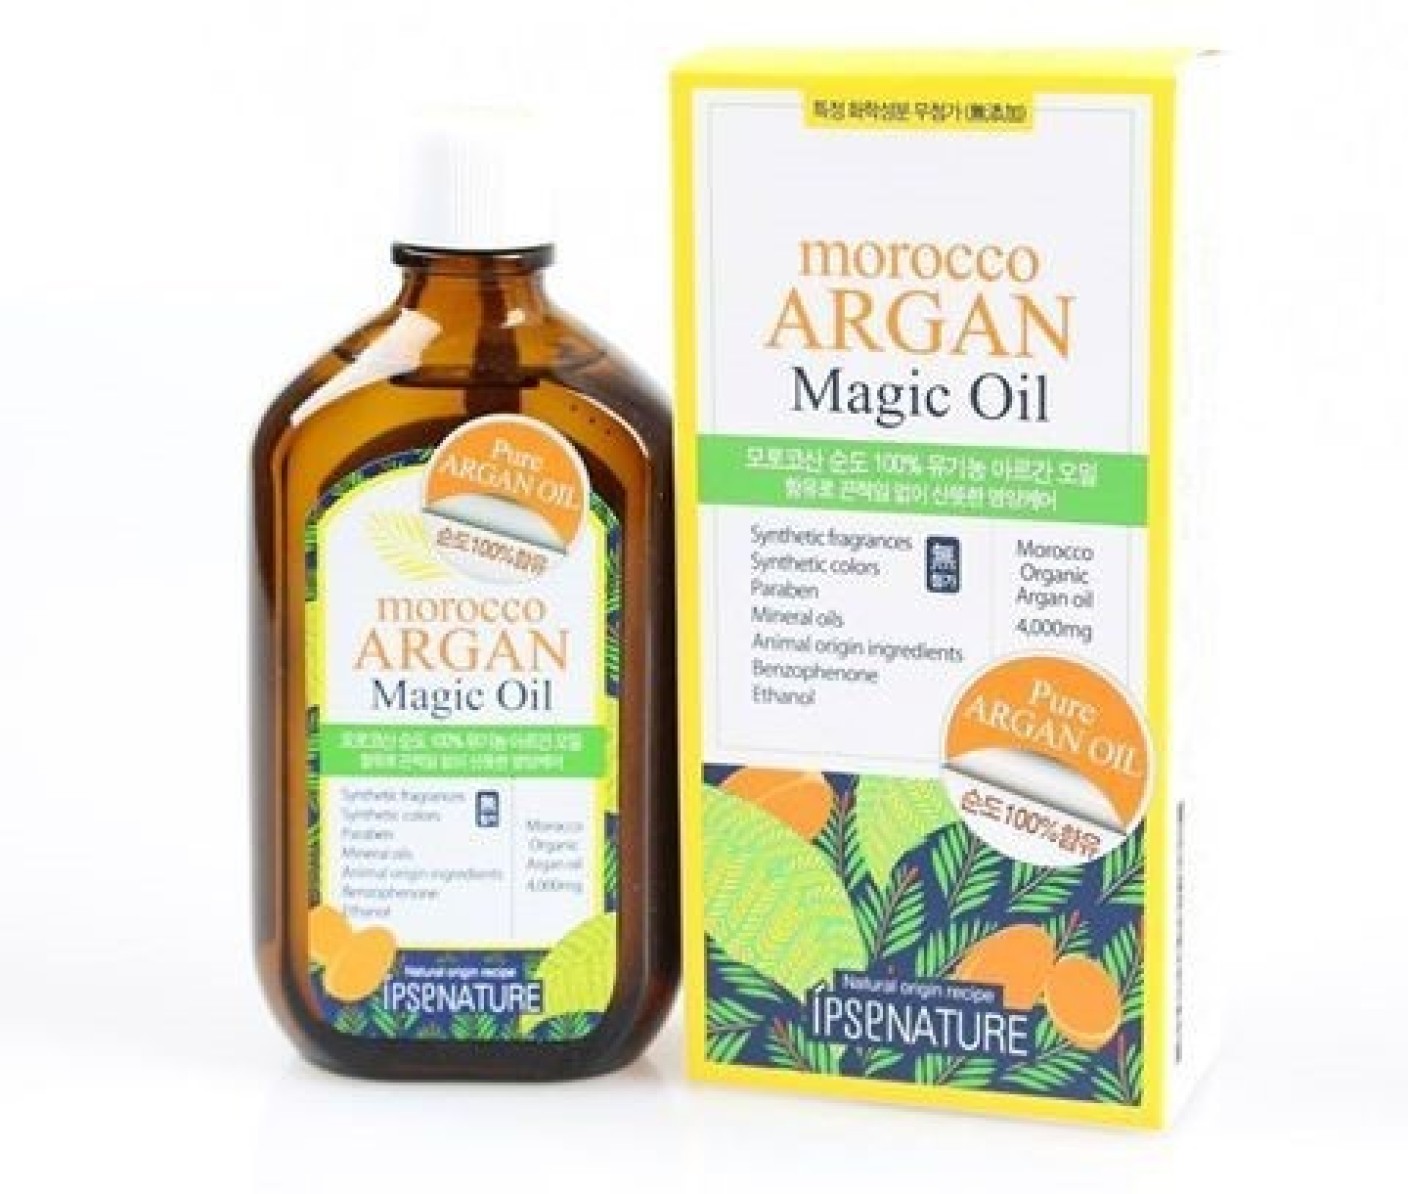 Morocco Argan Magic Oil Hair Oil Price In India Buy Morocco